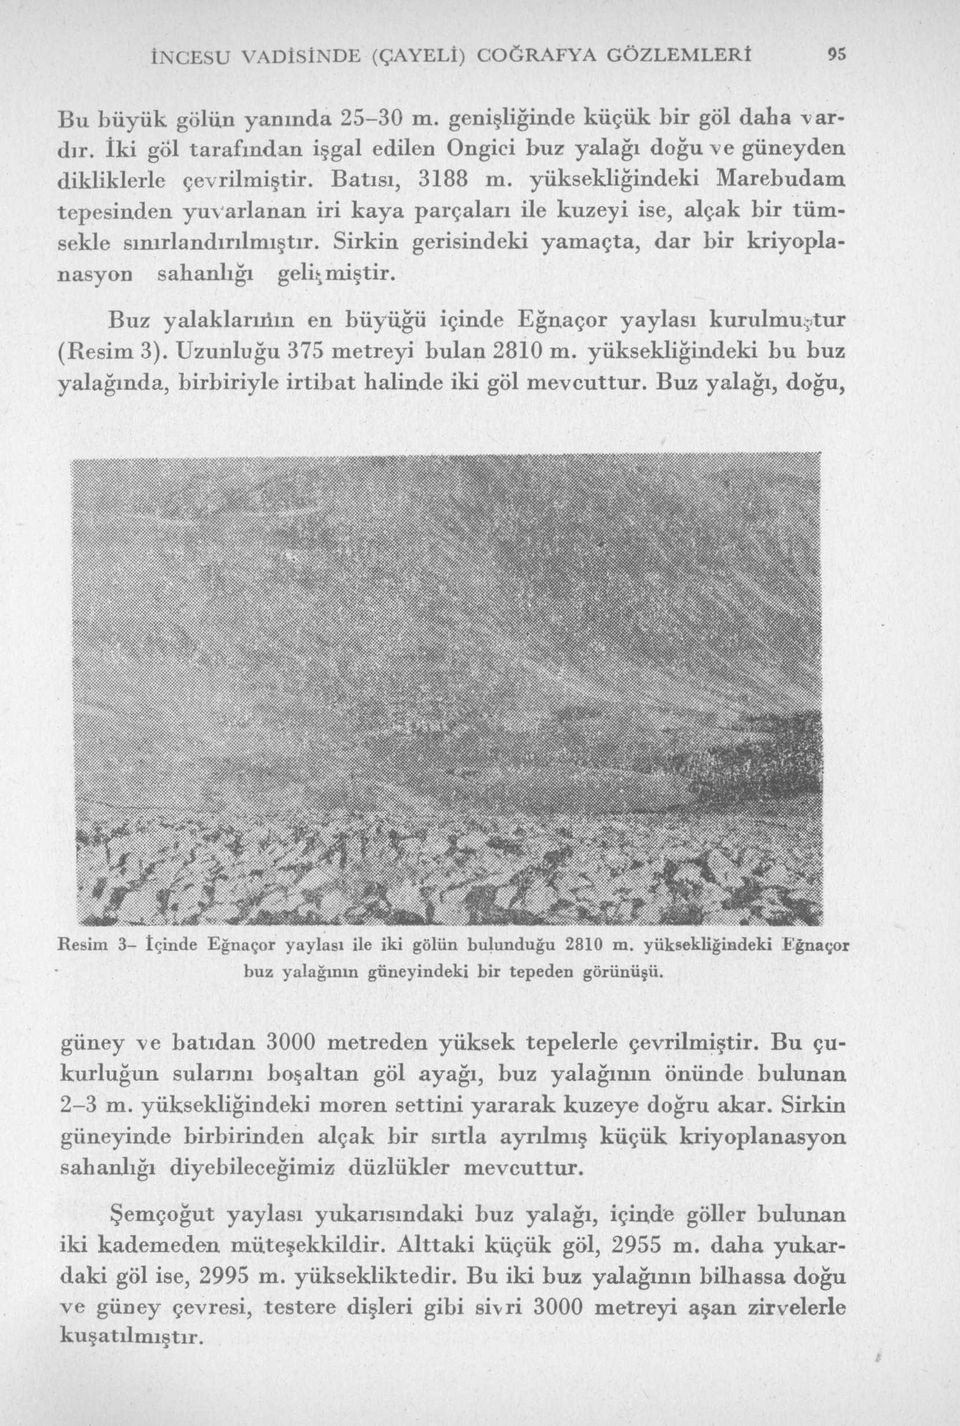 yüksekliğindeki Marebudam tepesinden yuvarlanan iri kaya parçaları ile kuzeyi ise, alçak bir tümsekle sınırlandırılmıştır. Sirkin gerisindeki yamaçta, dar bir kriyoplanasyon sahanlığı gelişmiştir.